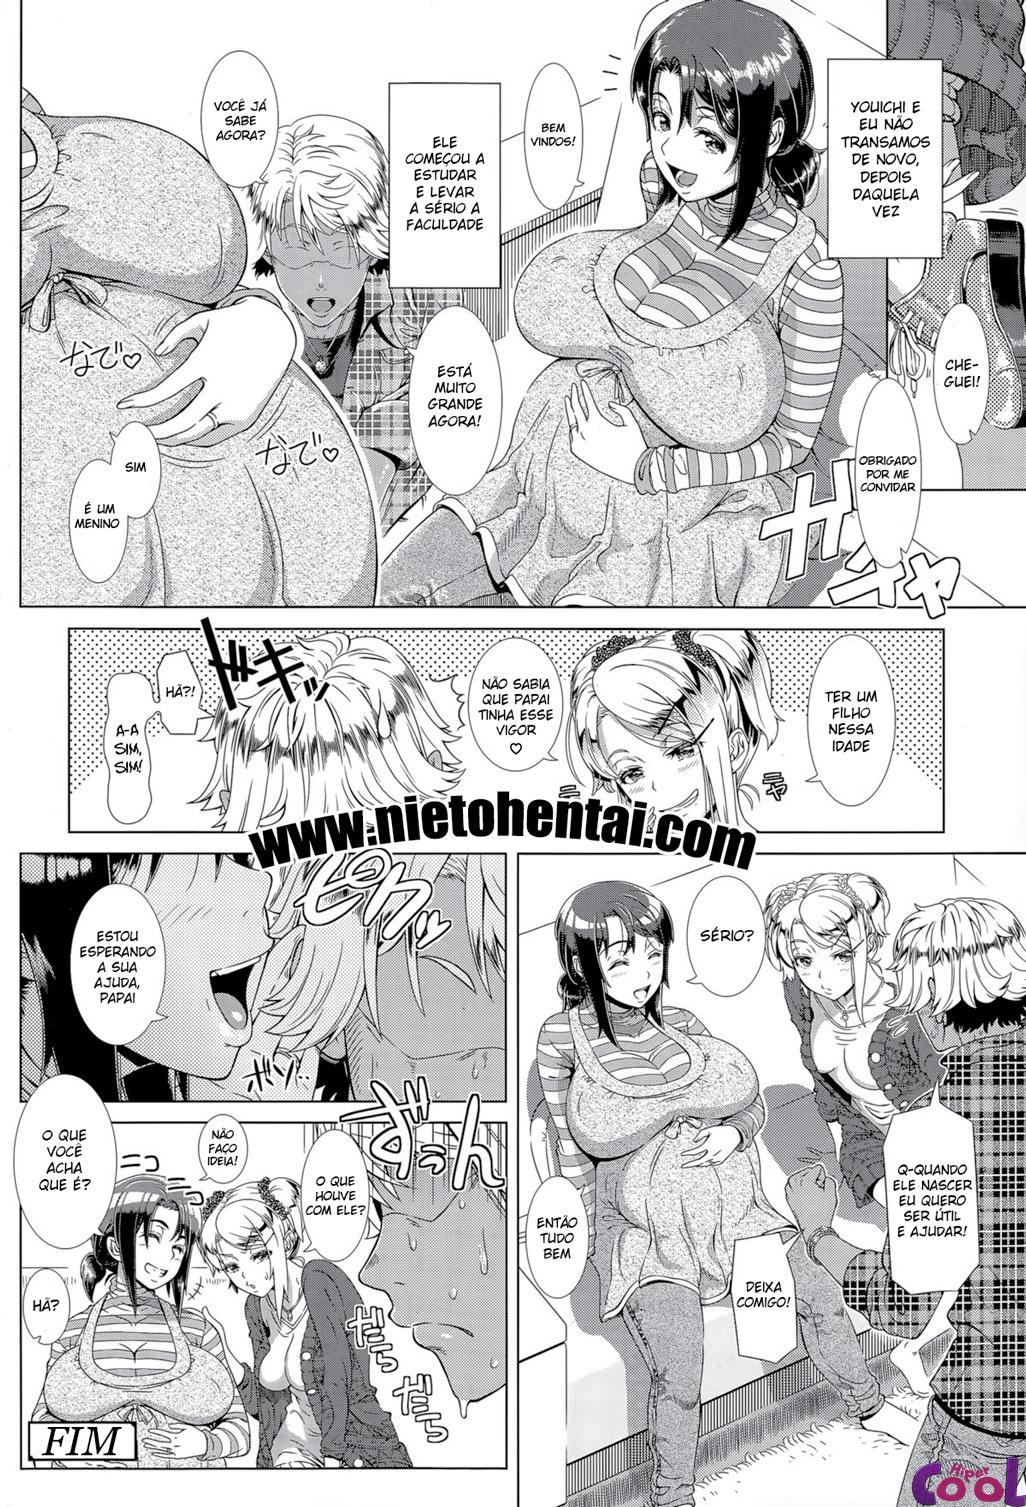 hitozuma-life-chapter-02-page-27.jpg